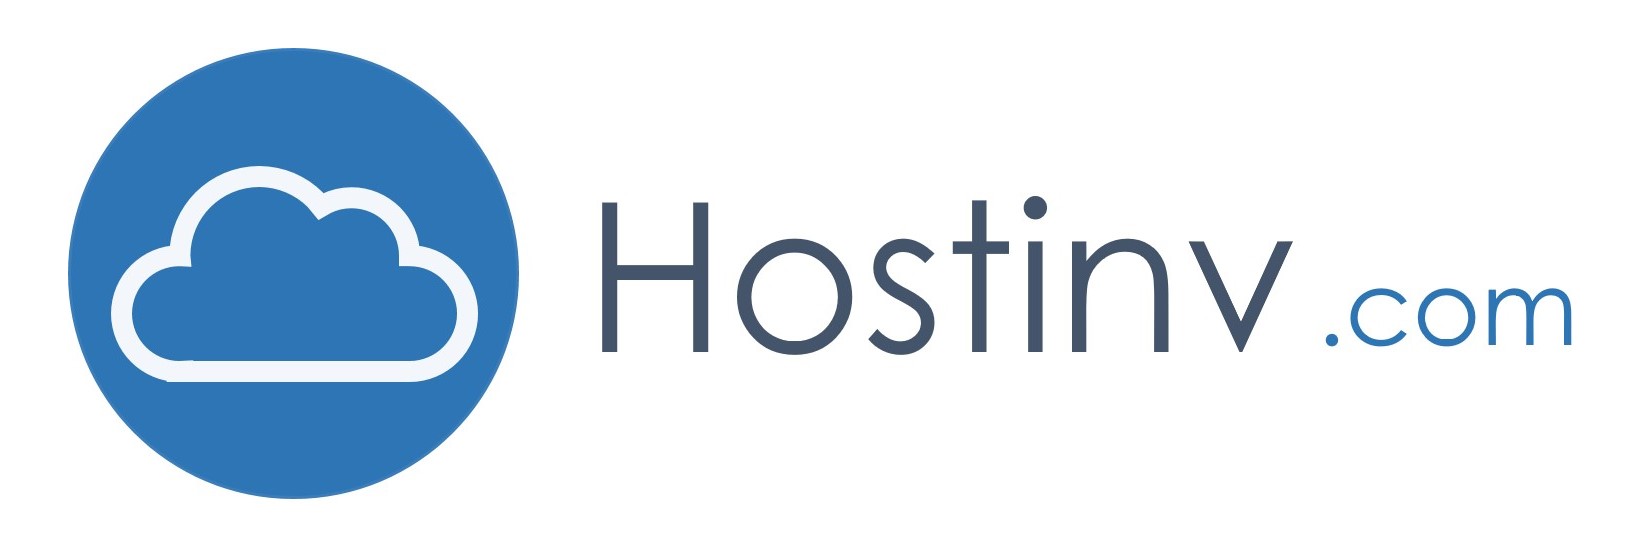 Hostinv.com